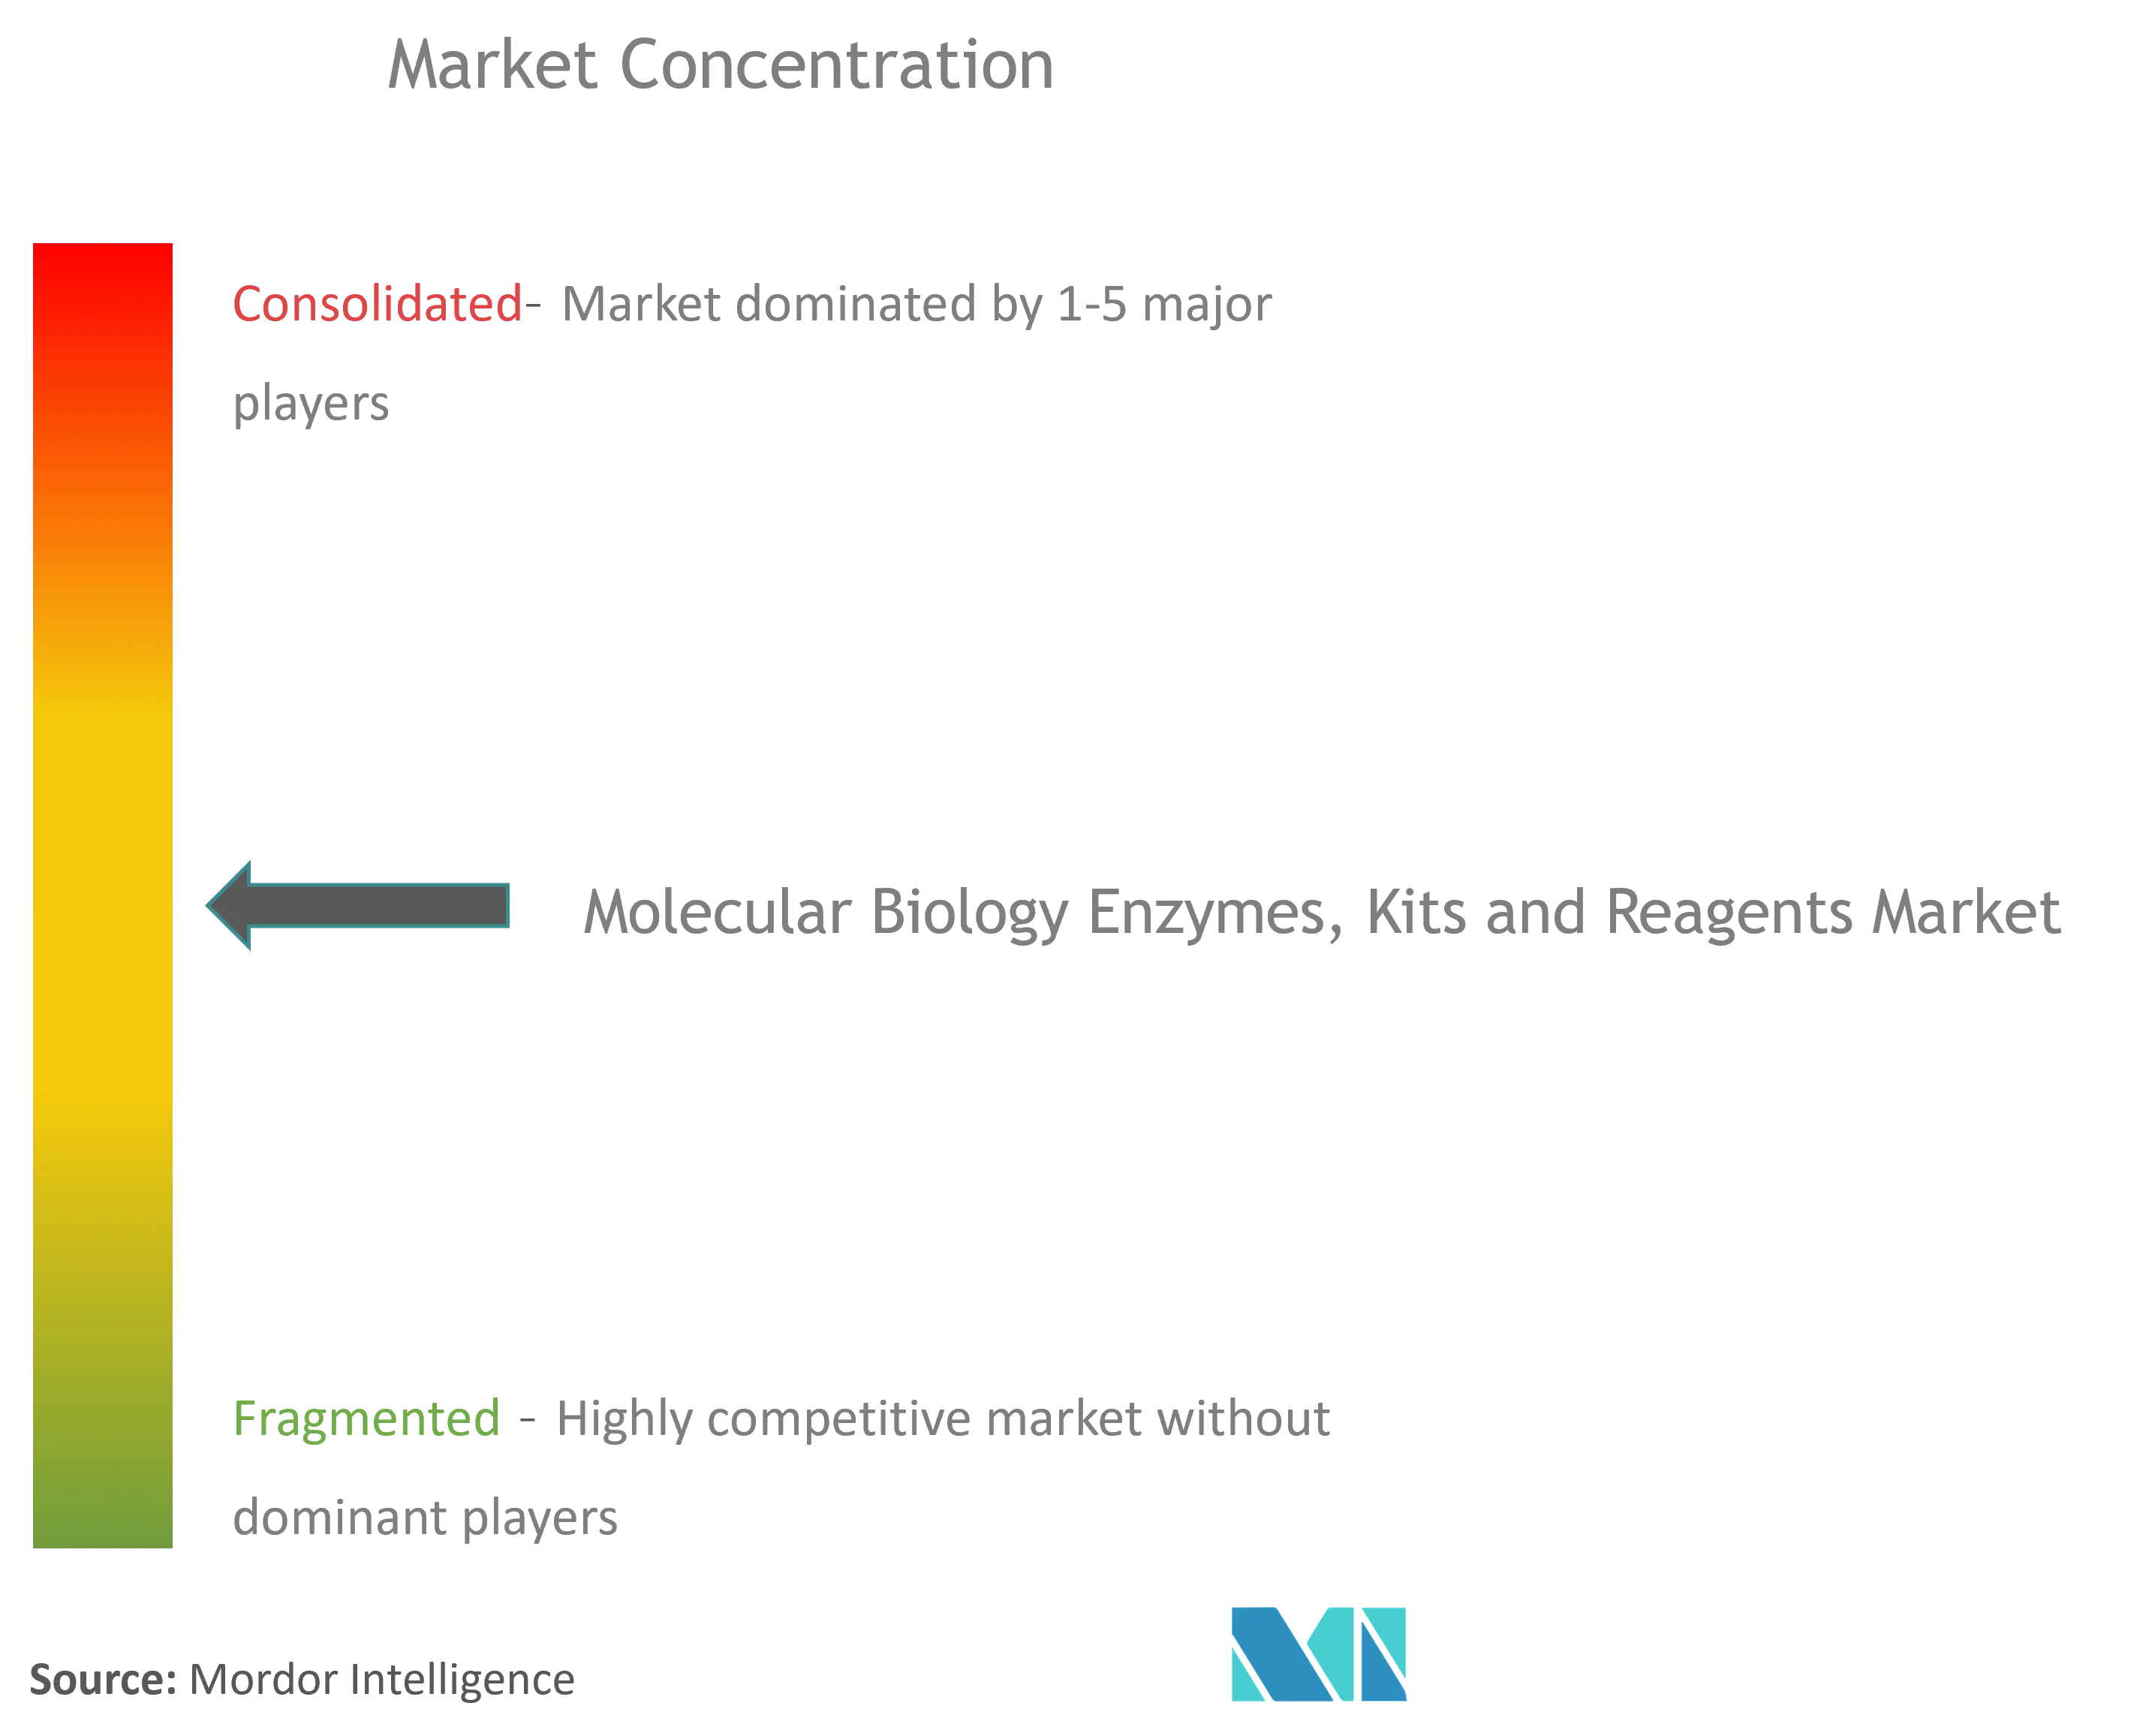 Concentración de mercado de kits y reactivos de enzimas de biología molecular